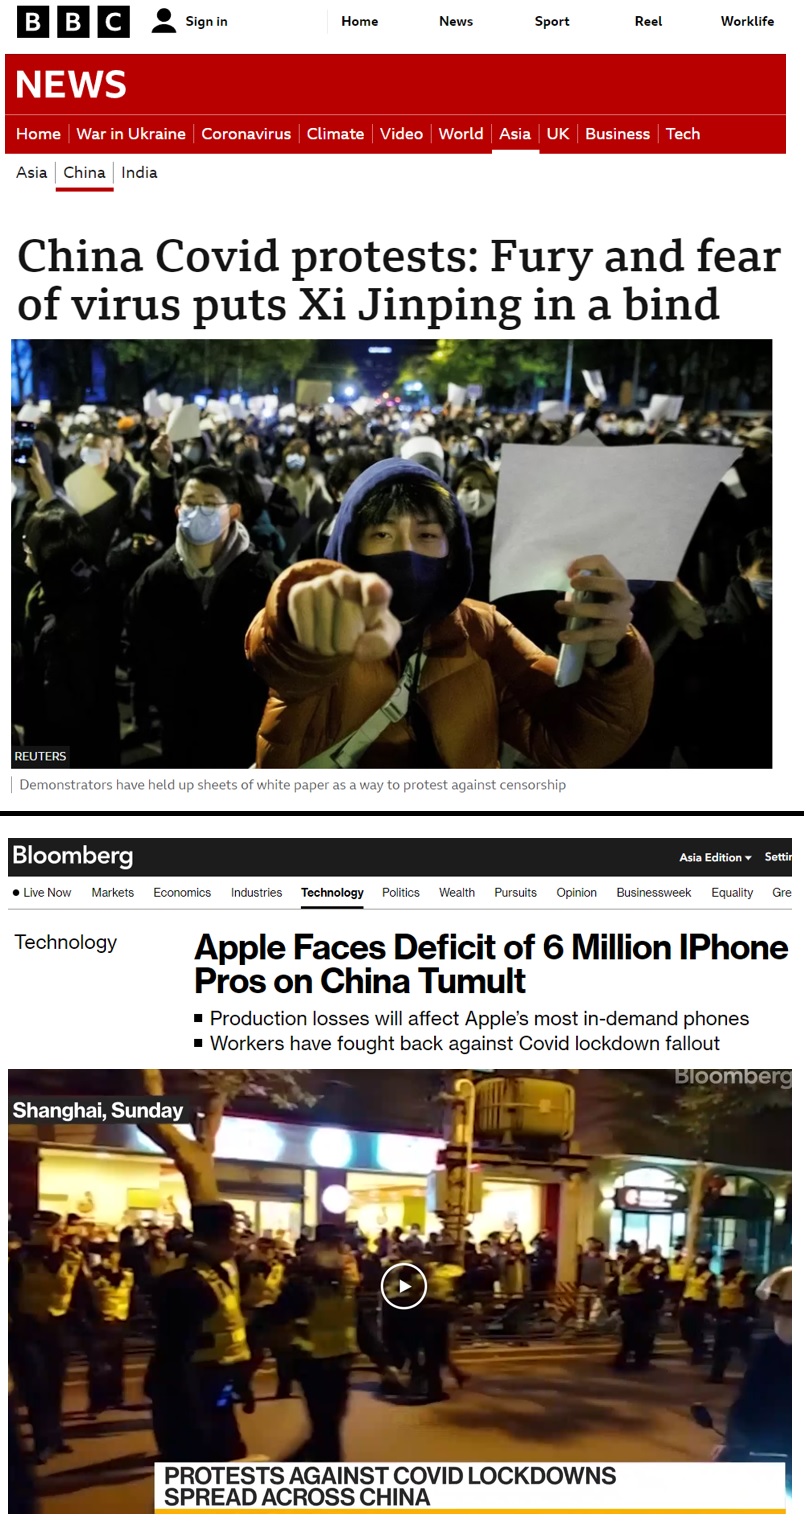 봉쇄정책에 반발하며 시위하는 중국인&#44; 애플의 아이폰 생상량 감소 예정